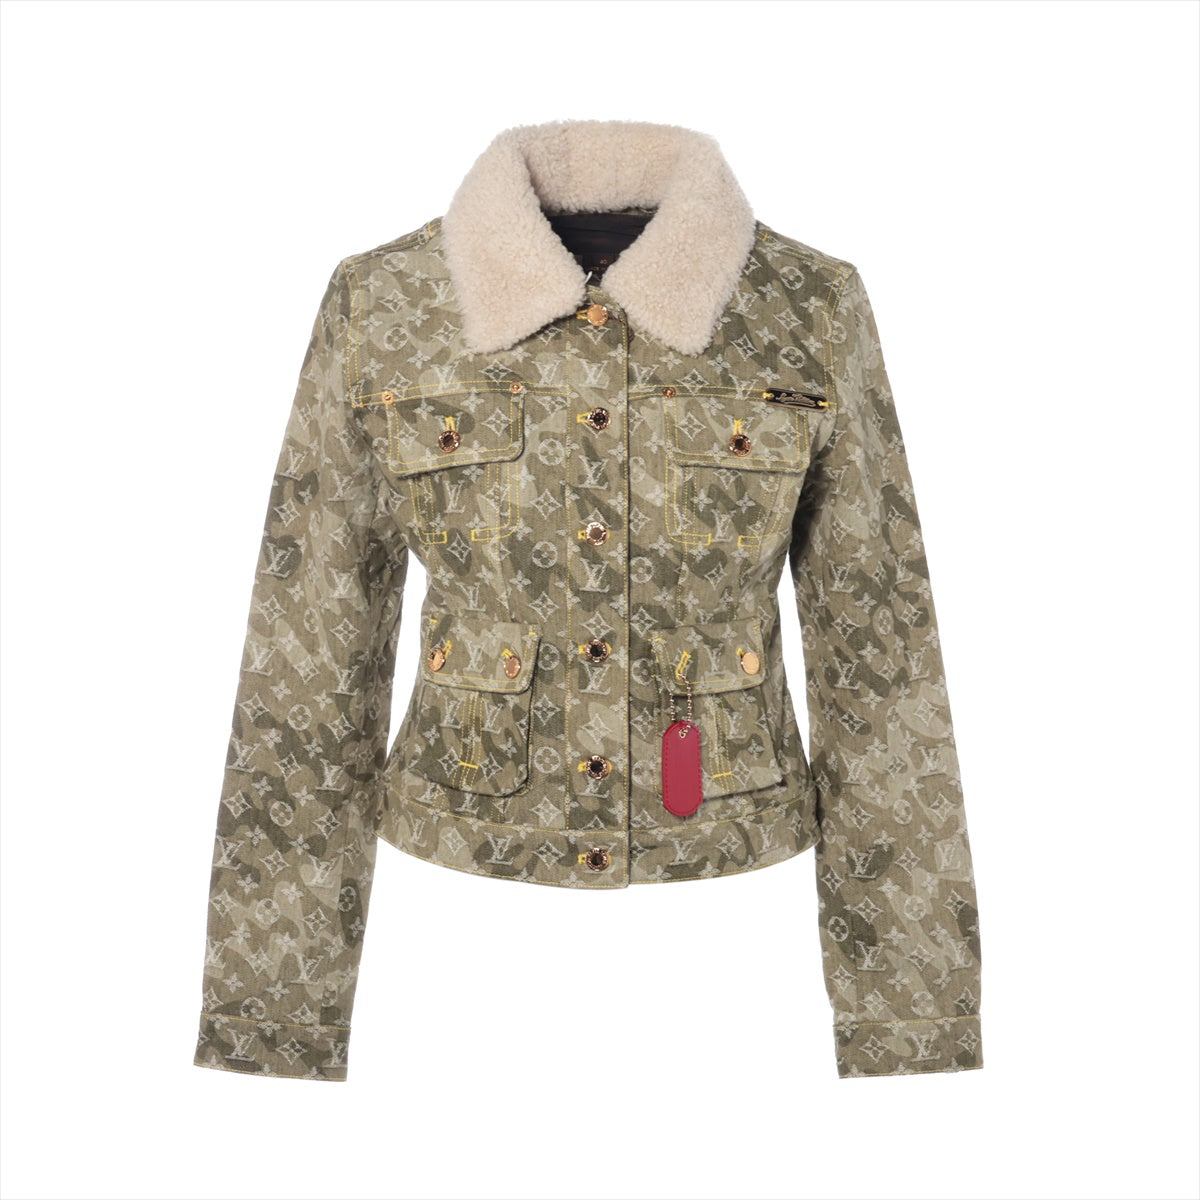 Louis Vuitton x Murakami Takashi 08AW Cotton Denim jacket 40 Ladies' Khaki  RW082W Camouflage Monogram Bore removable